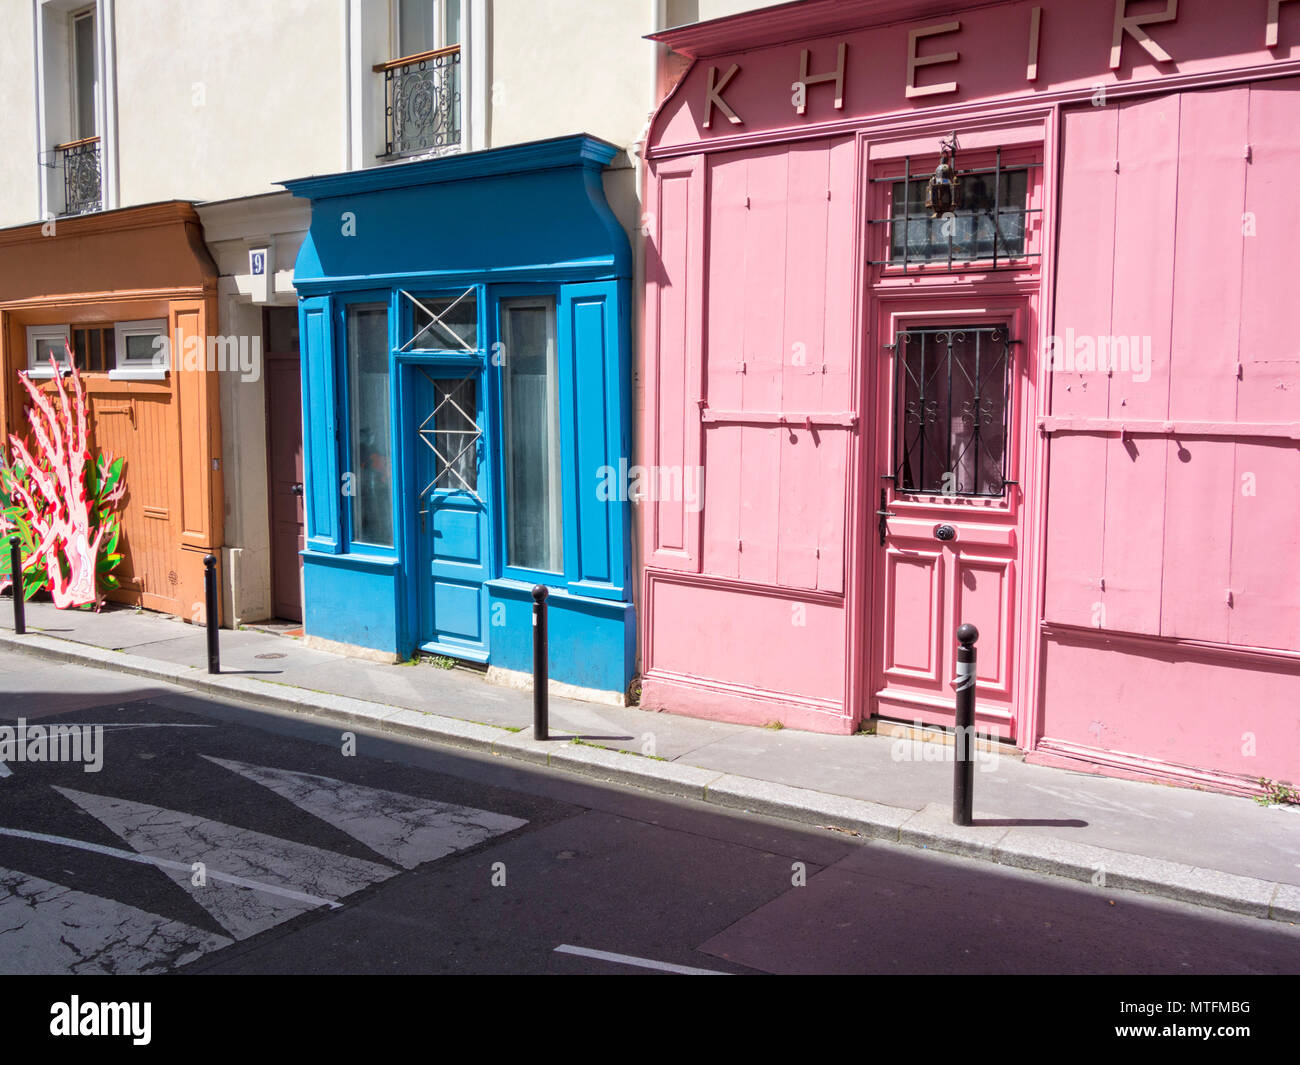 Façades colorées dans la rue St-Marthe, 10e arrondissement, Paris. Le Sainte-Marthe le trimestre, l'une des plus anciennes de la ville, est connue pour ses thrivin Banque D'Images